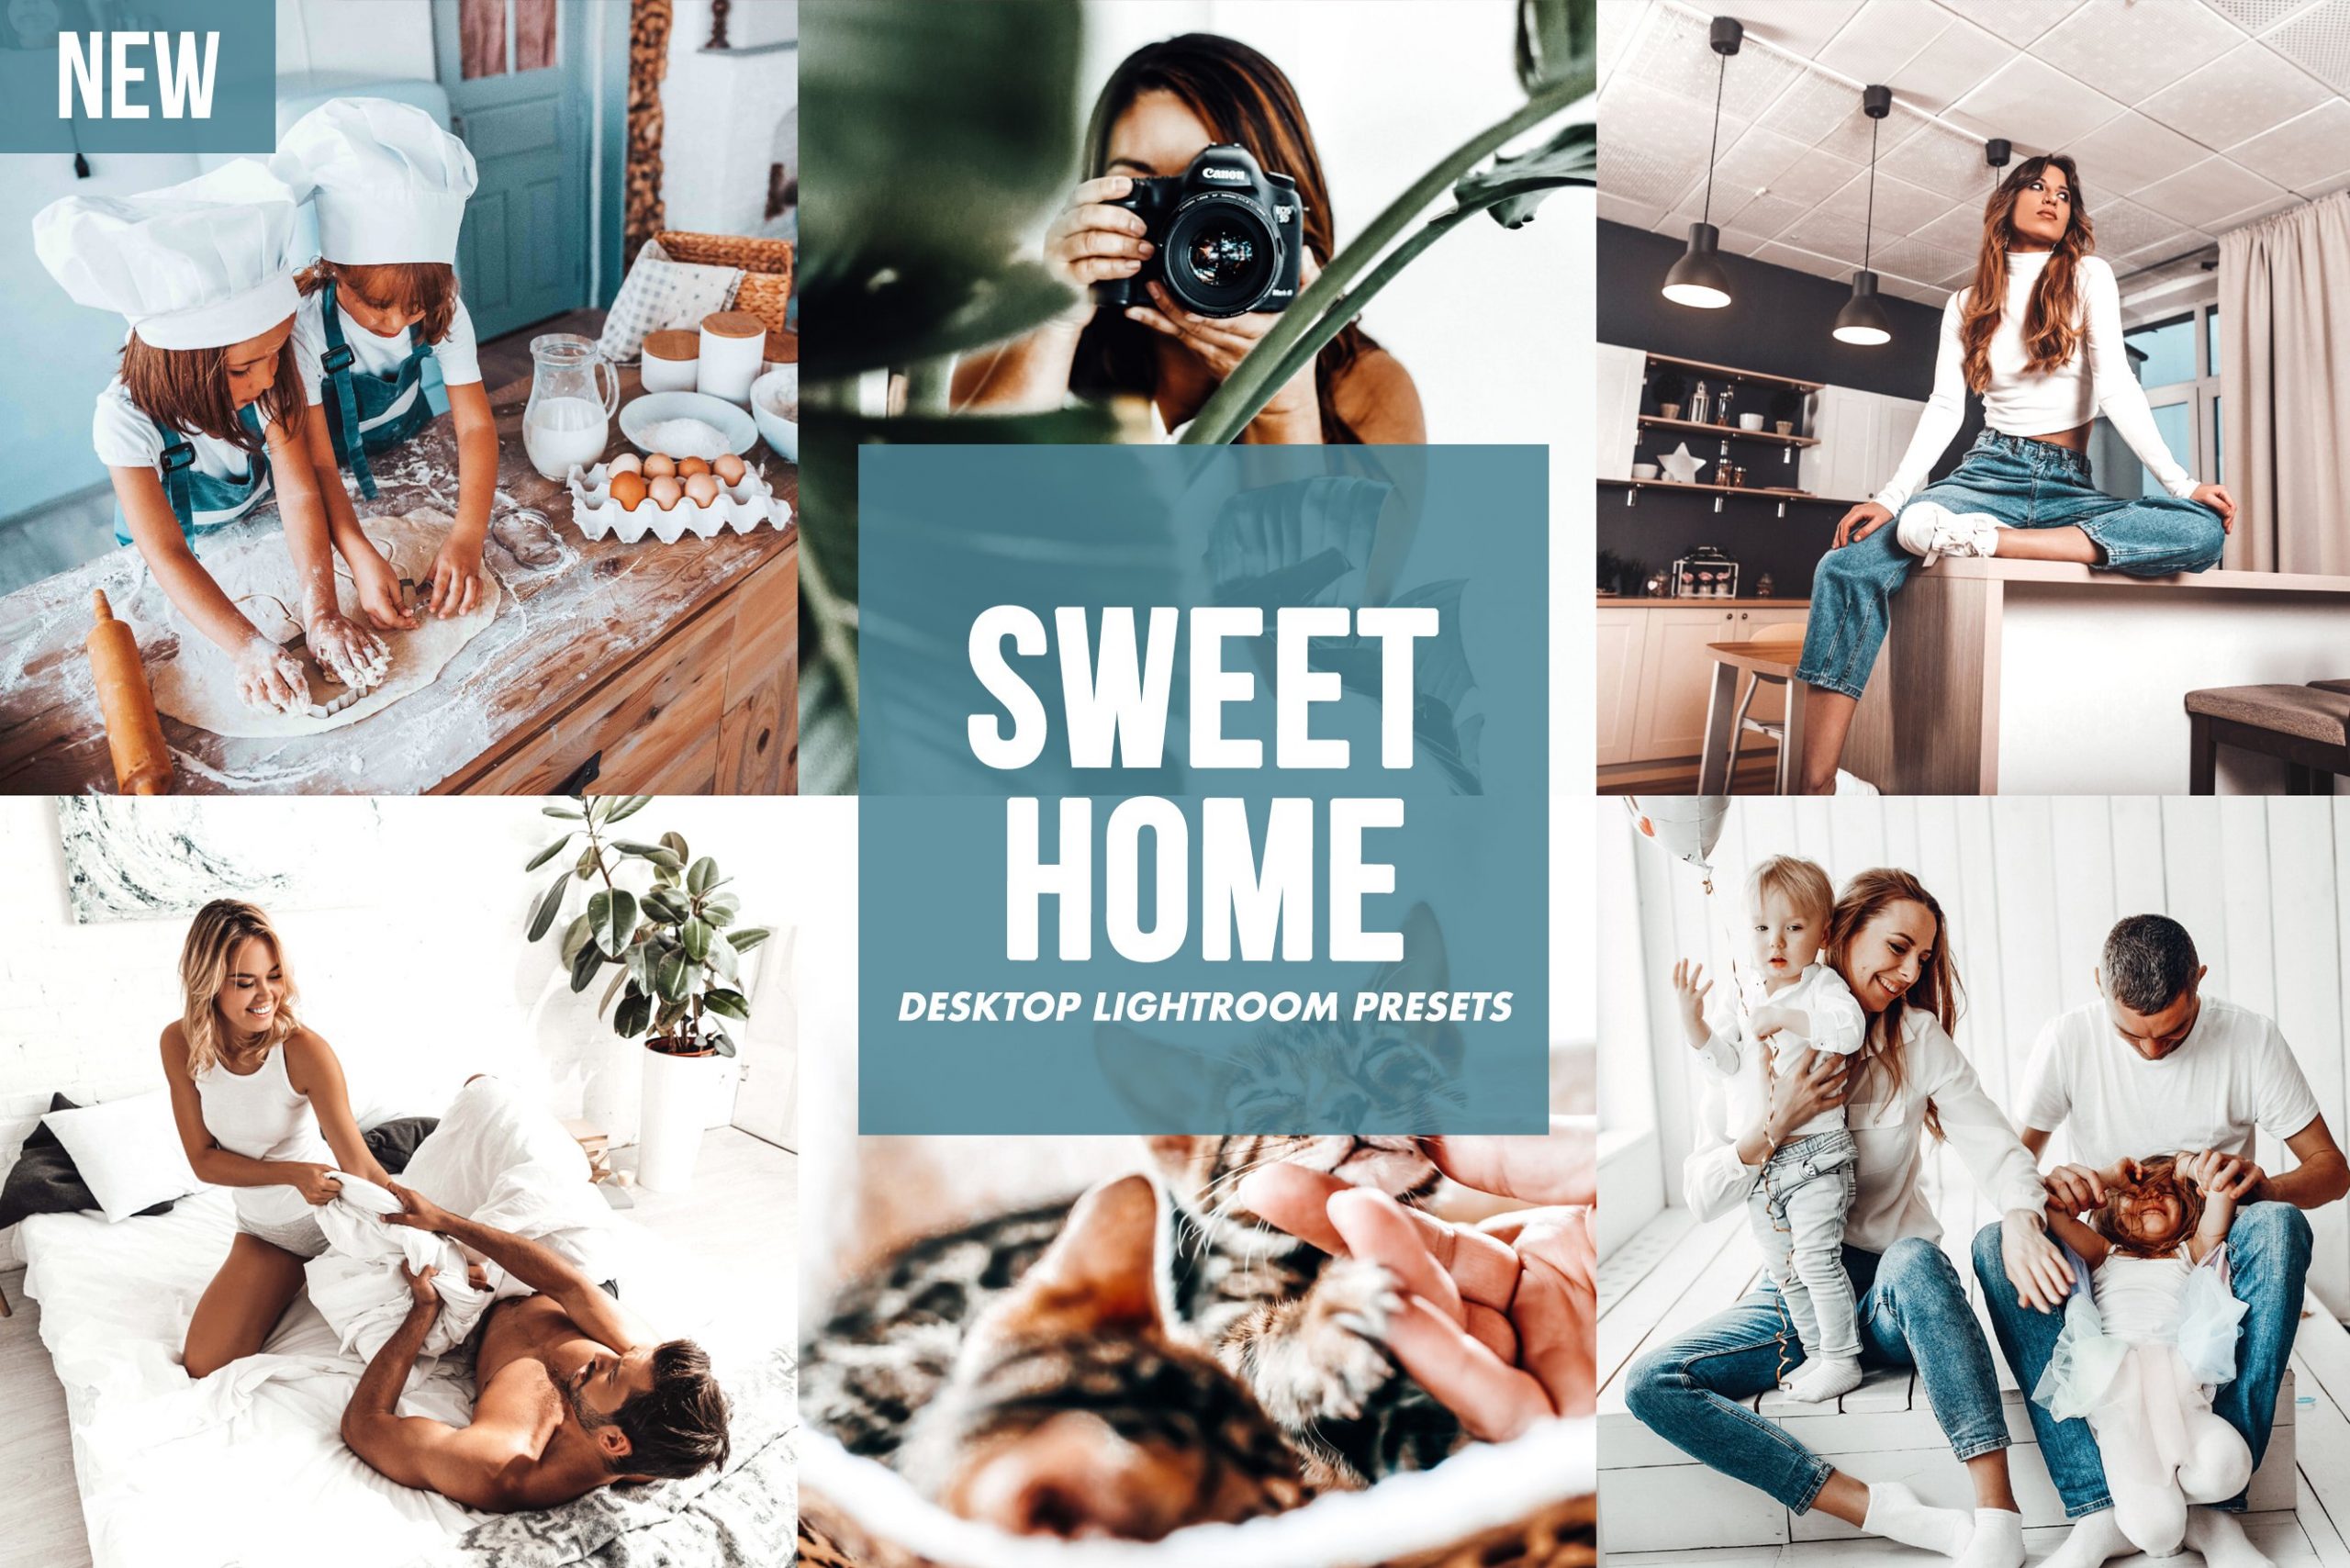 SWEET HOME Desktop and Mobile Lightroom Presets Cover